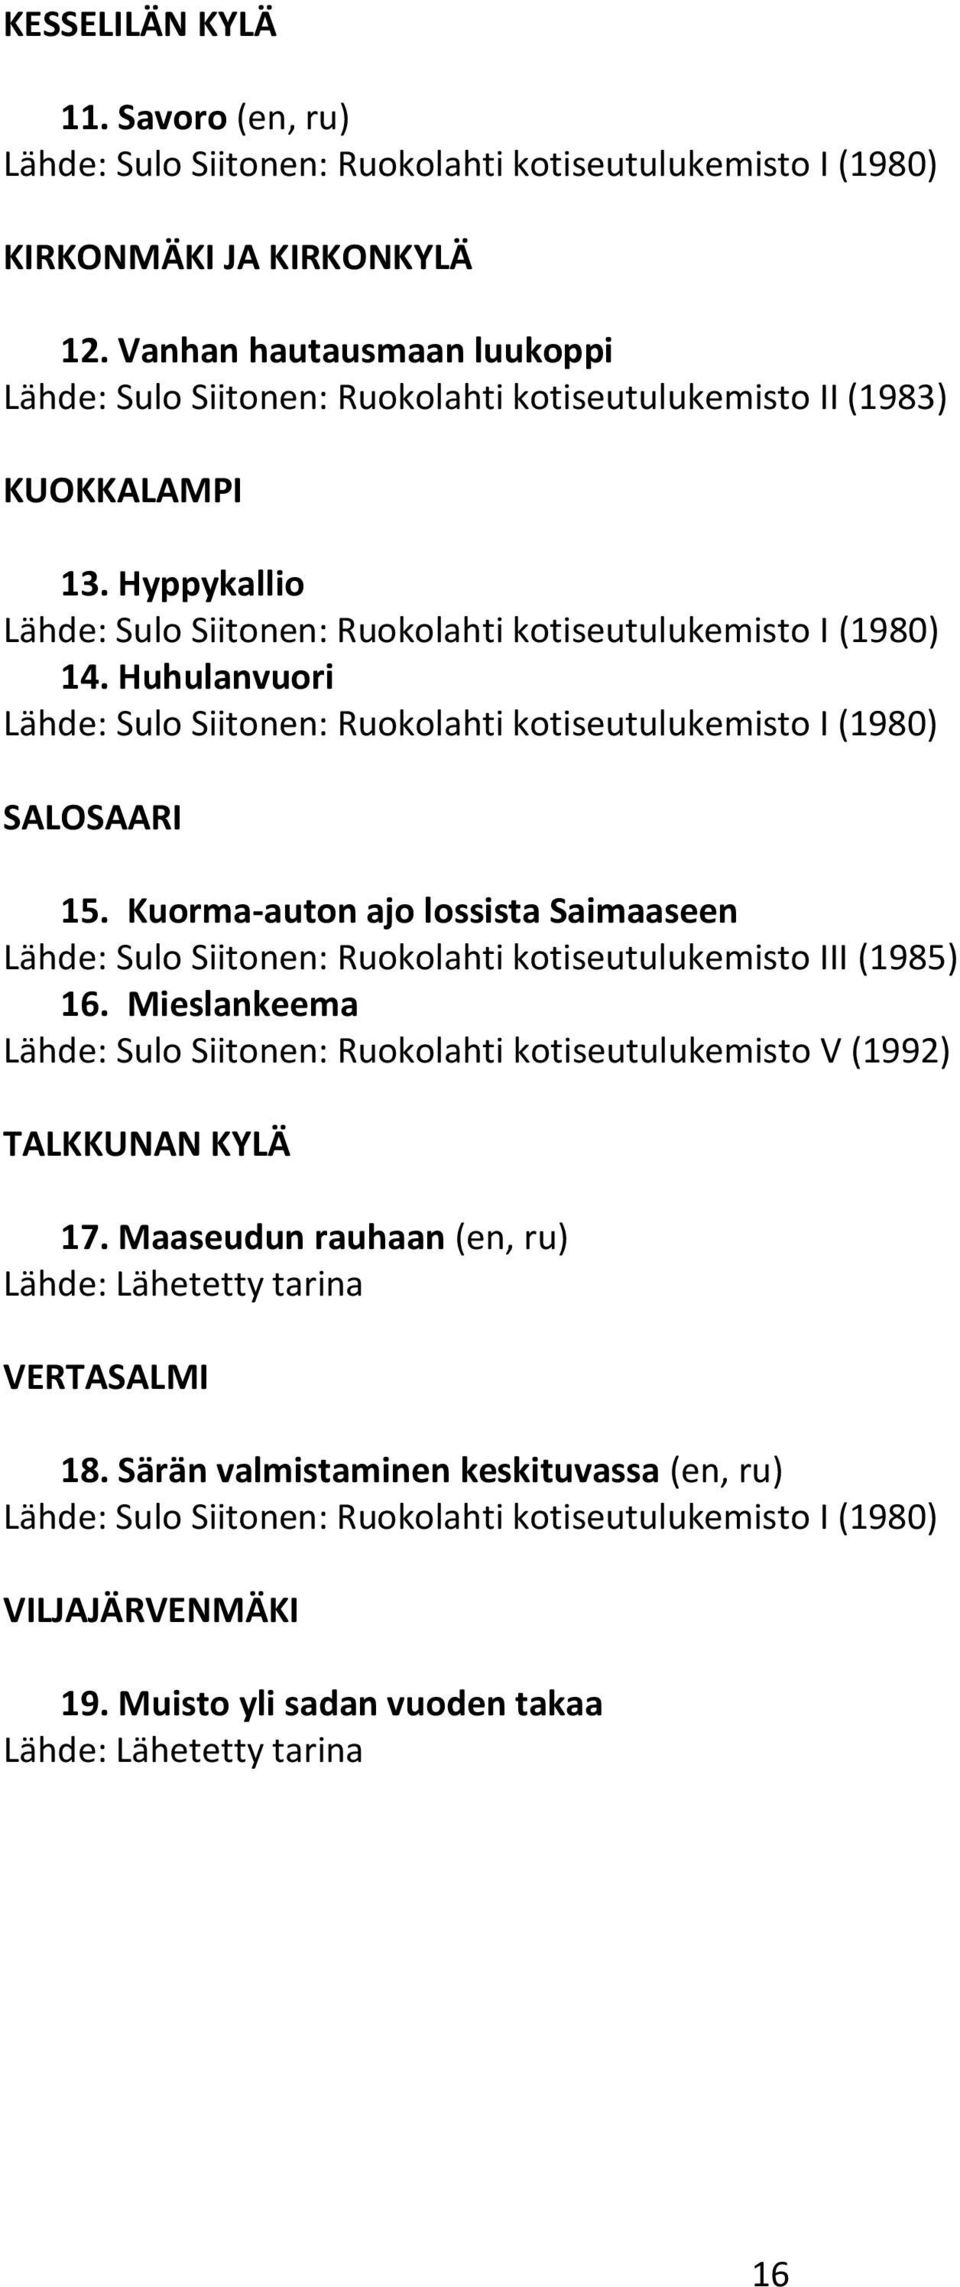 Huhulanvuori Lähde: Sulo Siitonen: Ruokolahti kotiseutulukemisto I (1980) SALOSAARI 15. Kuorma-auton ajo lossista Saimaaseen Lähde: Sulo Siitonen: Ruokolahti kotiseutulukemisto III (1985) 16.